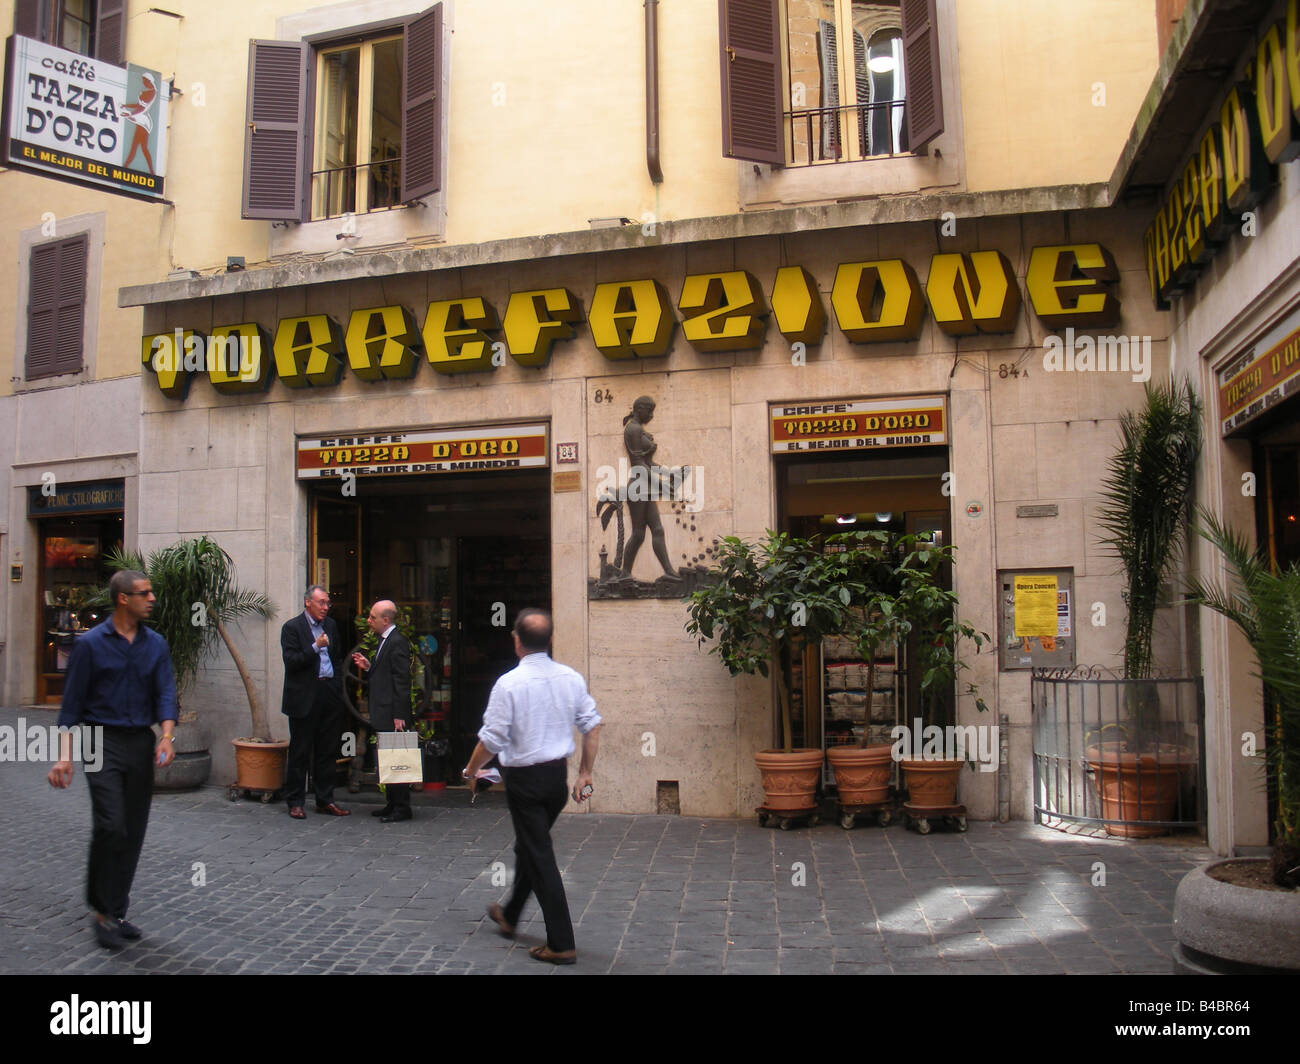 Street scene in front of La casa del caffe tazza d'oro in Rome, Italy Stock  Photo - Alamy